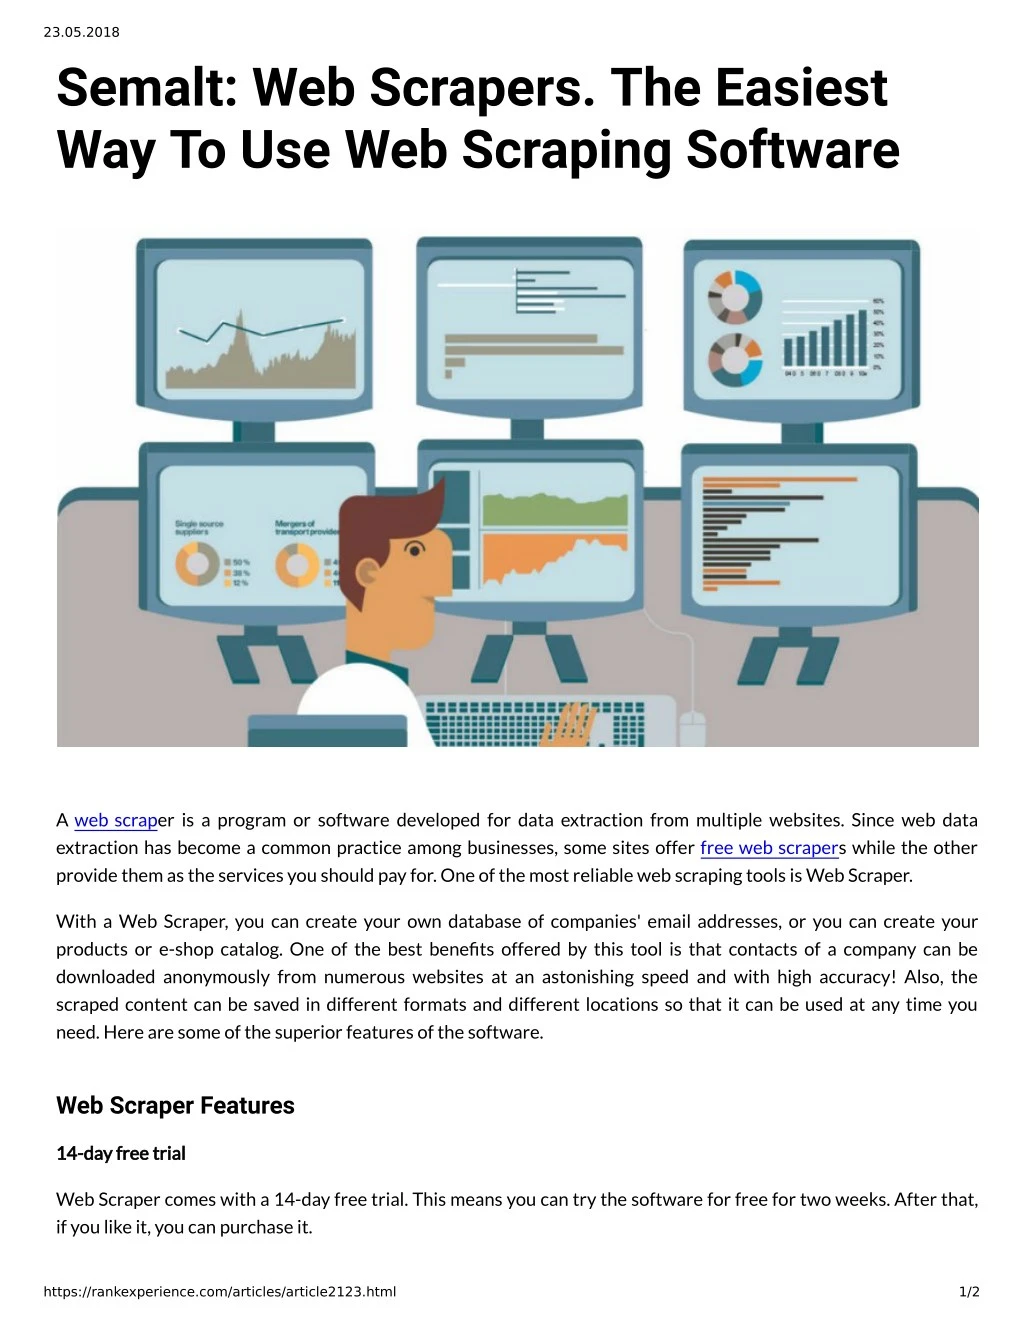 23 05 2018 semalt web scrapers the easiest